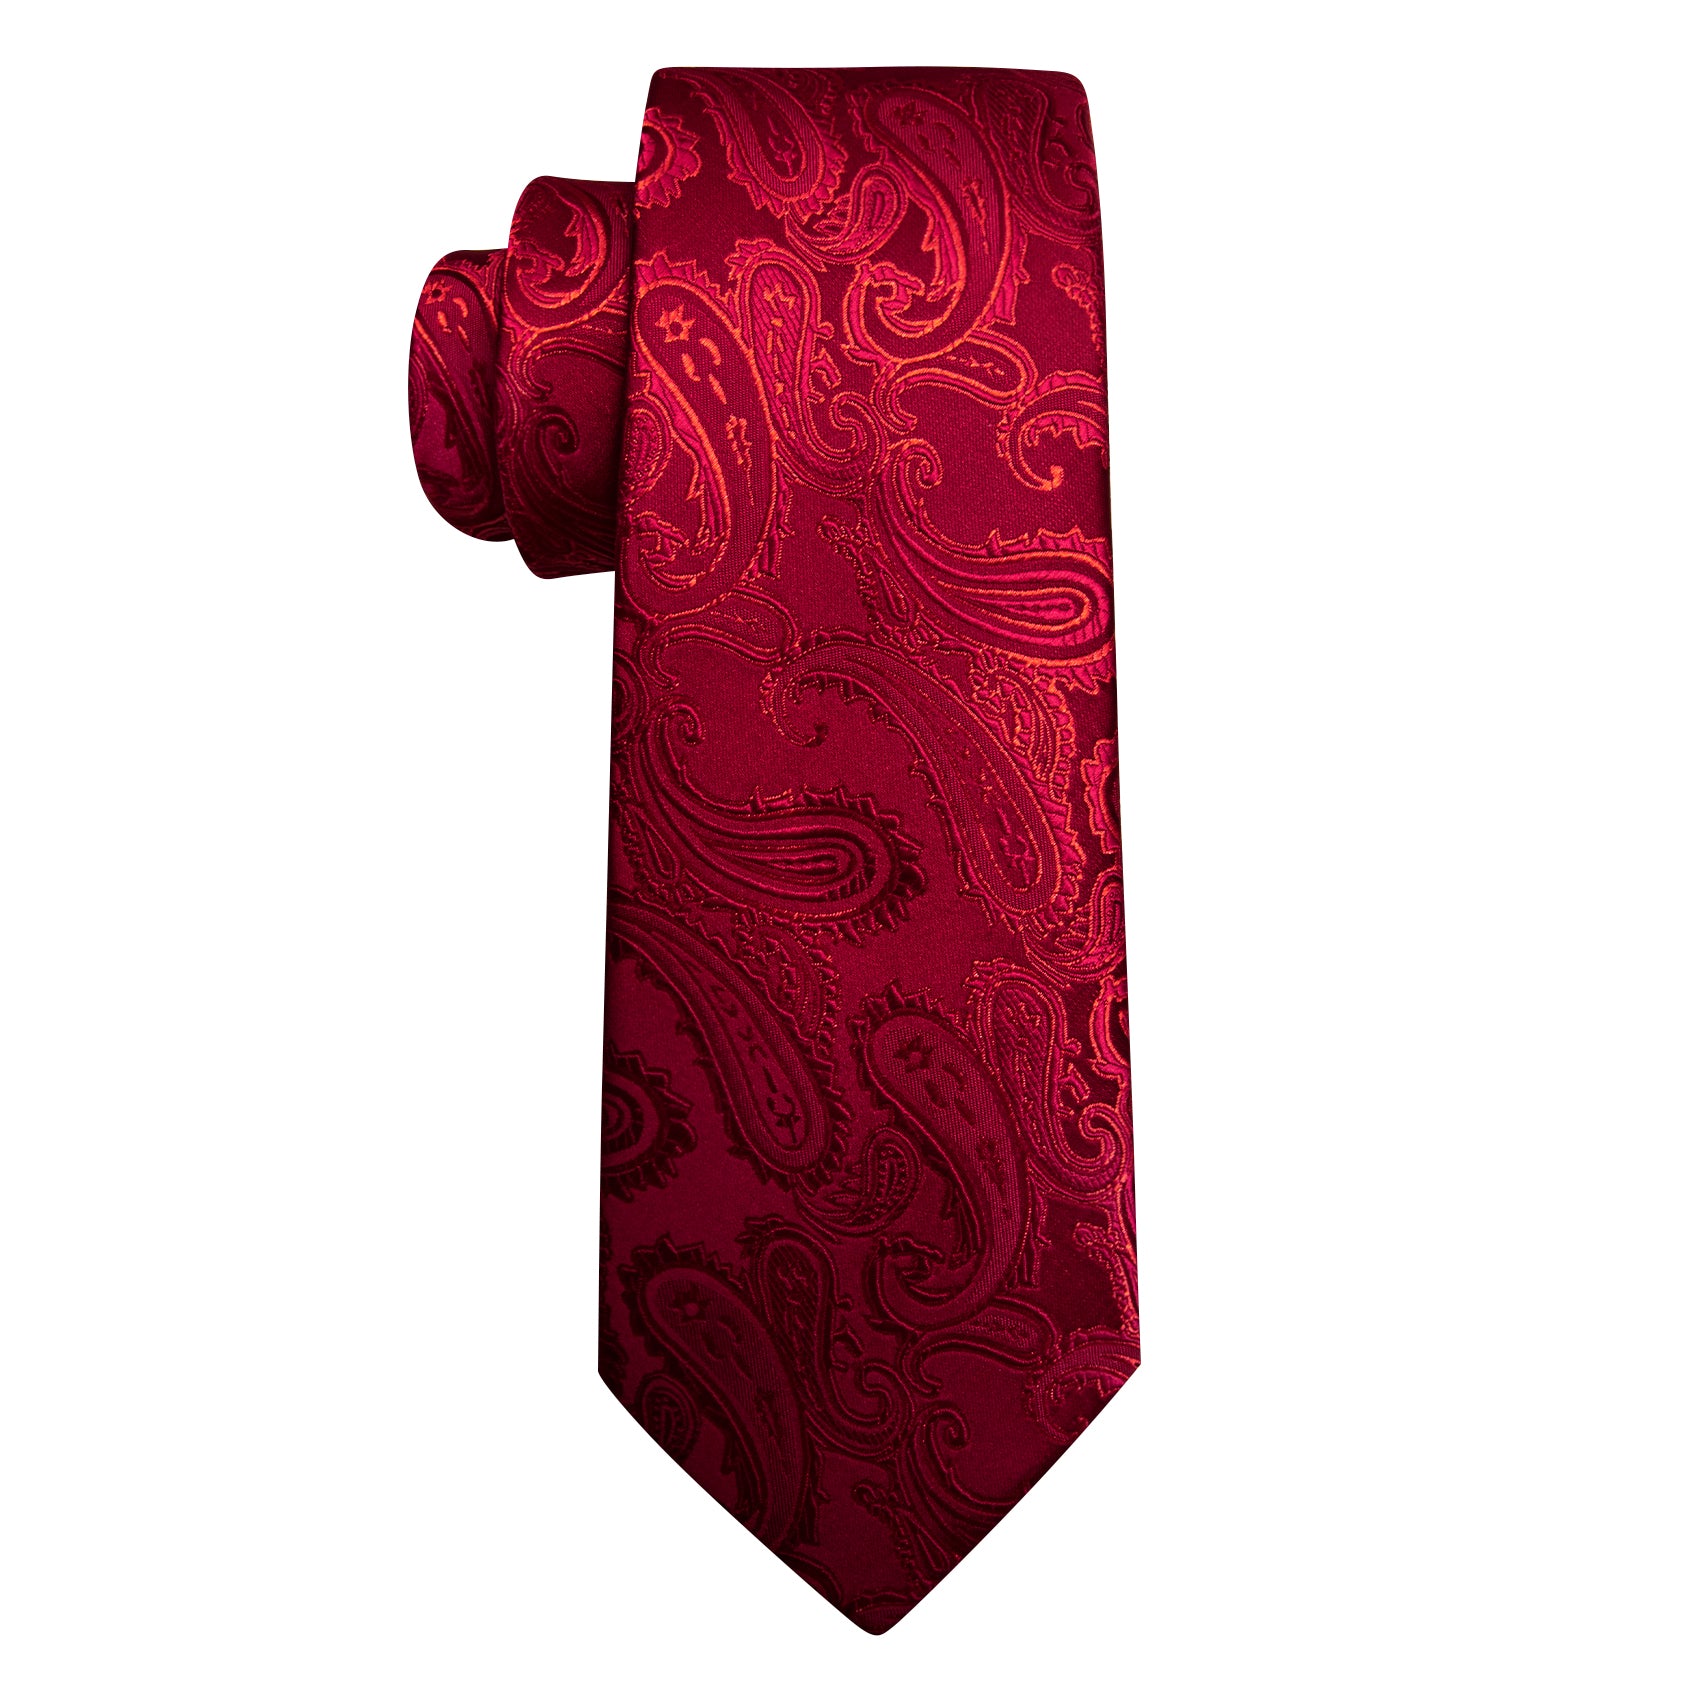 Barry.wang Red Tie Paisley Silk Men's Tie Handkerchief Cufflinks Set Classic